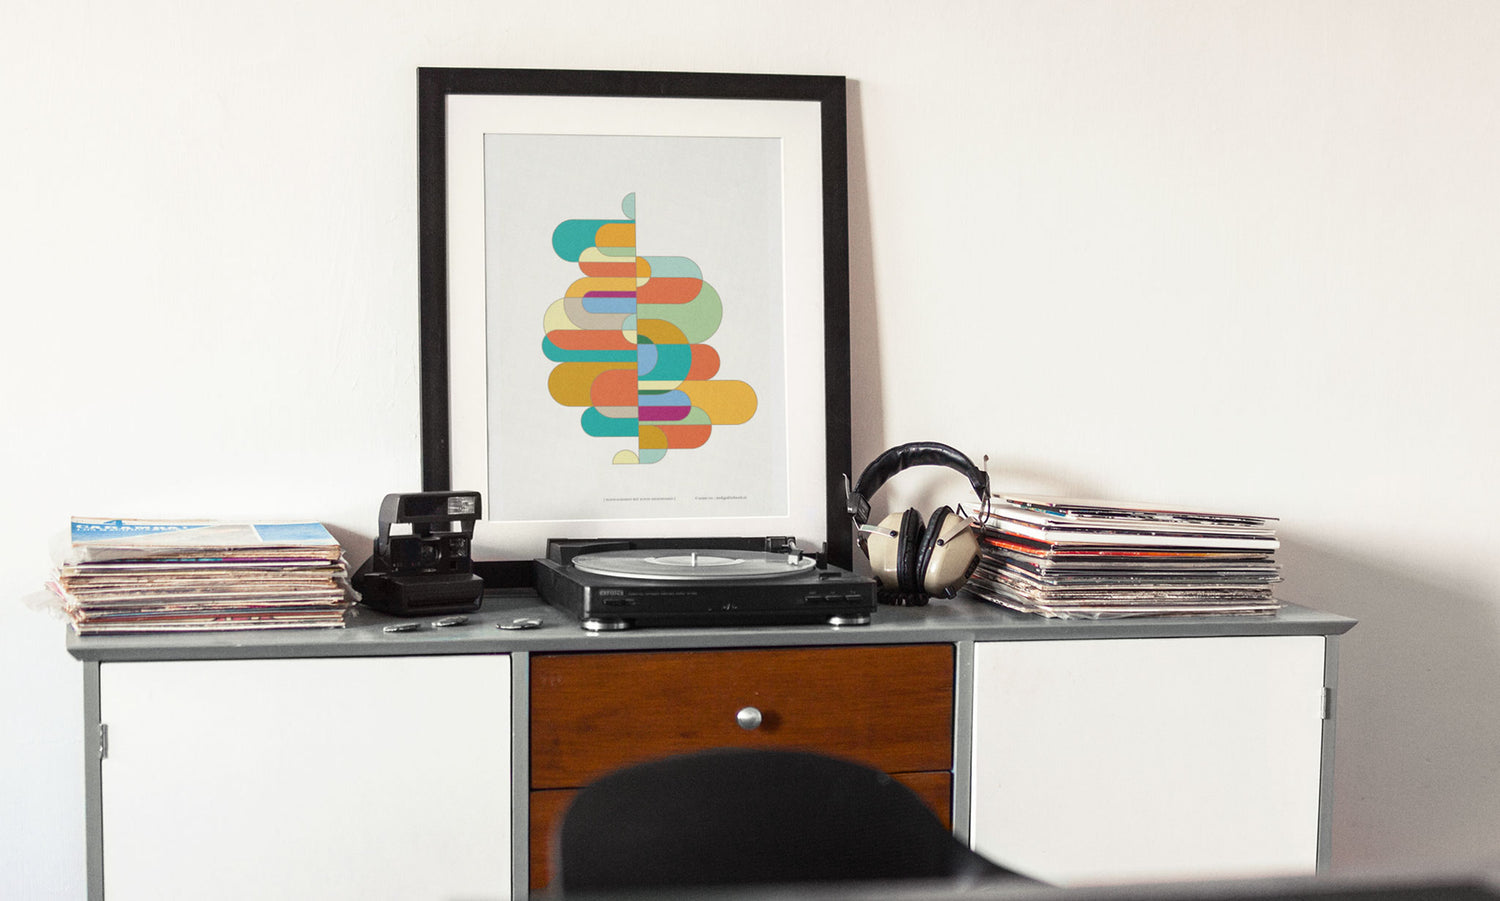 Poster "kleur-acrobaat met ronde rechthoeken" ingelijst staande op een tafel met een platenspeler in een interier